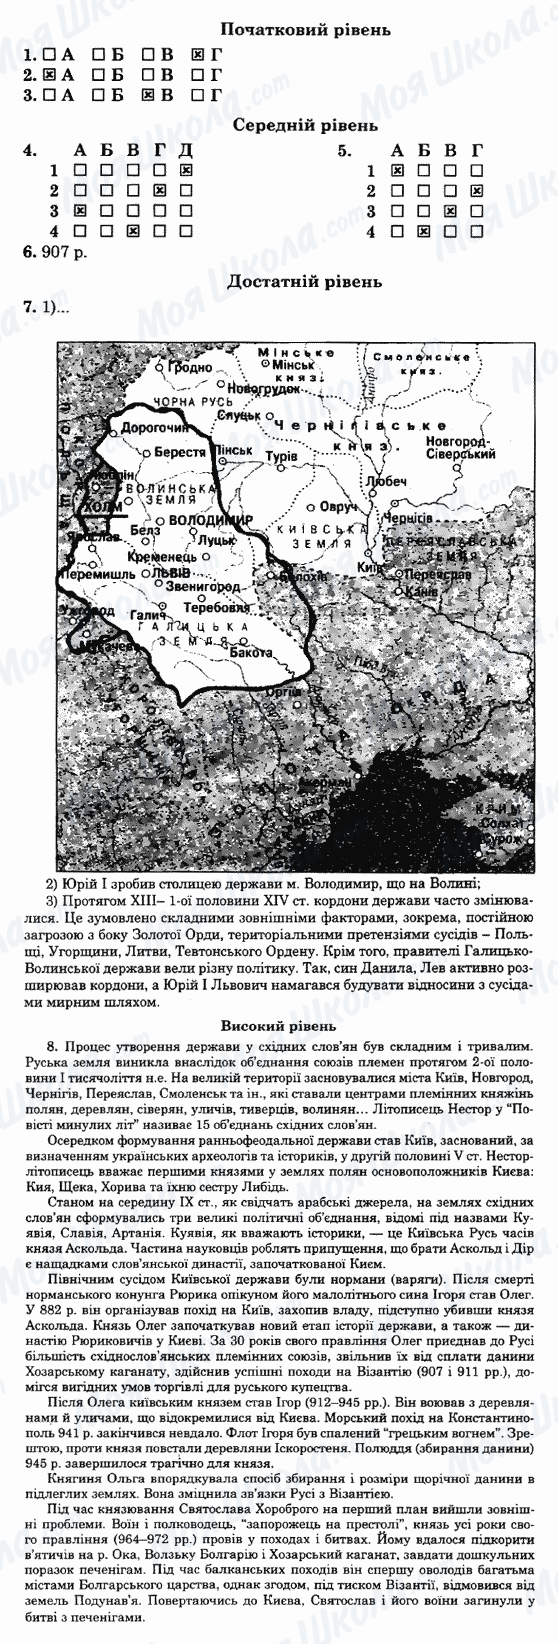 ГДЗ Історія України 7 клас сторінка 33-варіант